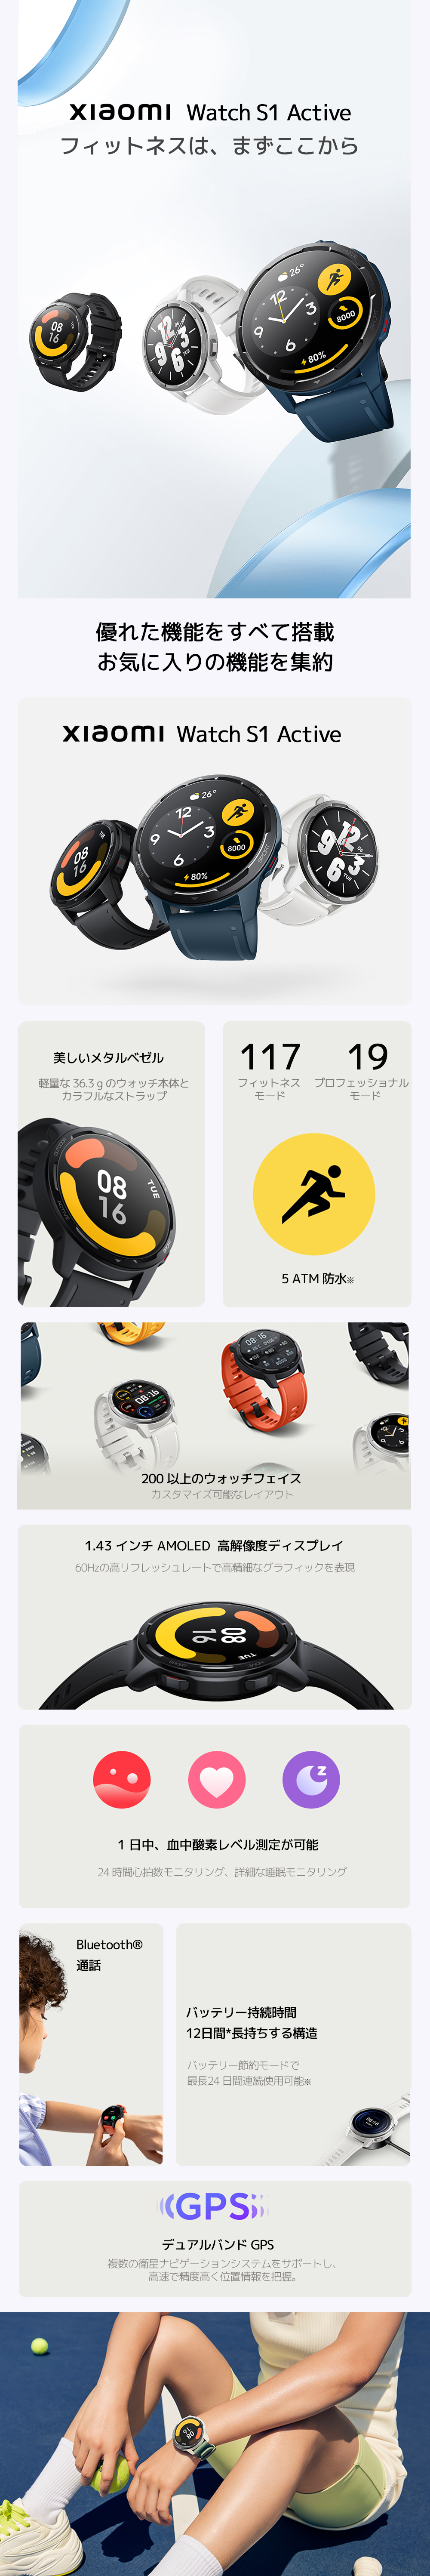 海外限定 Xiaomi Watch S1 Active 日本語版 スマートウォッチ LINE 通話機能 血中酸素 睡眠追跡 5ATM防水 衛星測位  マイク スピーカー 1.43インチ 470mAh 最大24日連続使用 マグネット充電 ビジネス メーカー1年保証 プレゼント ギフト 